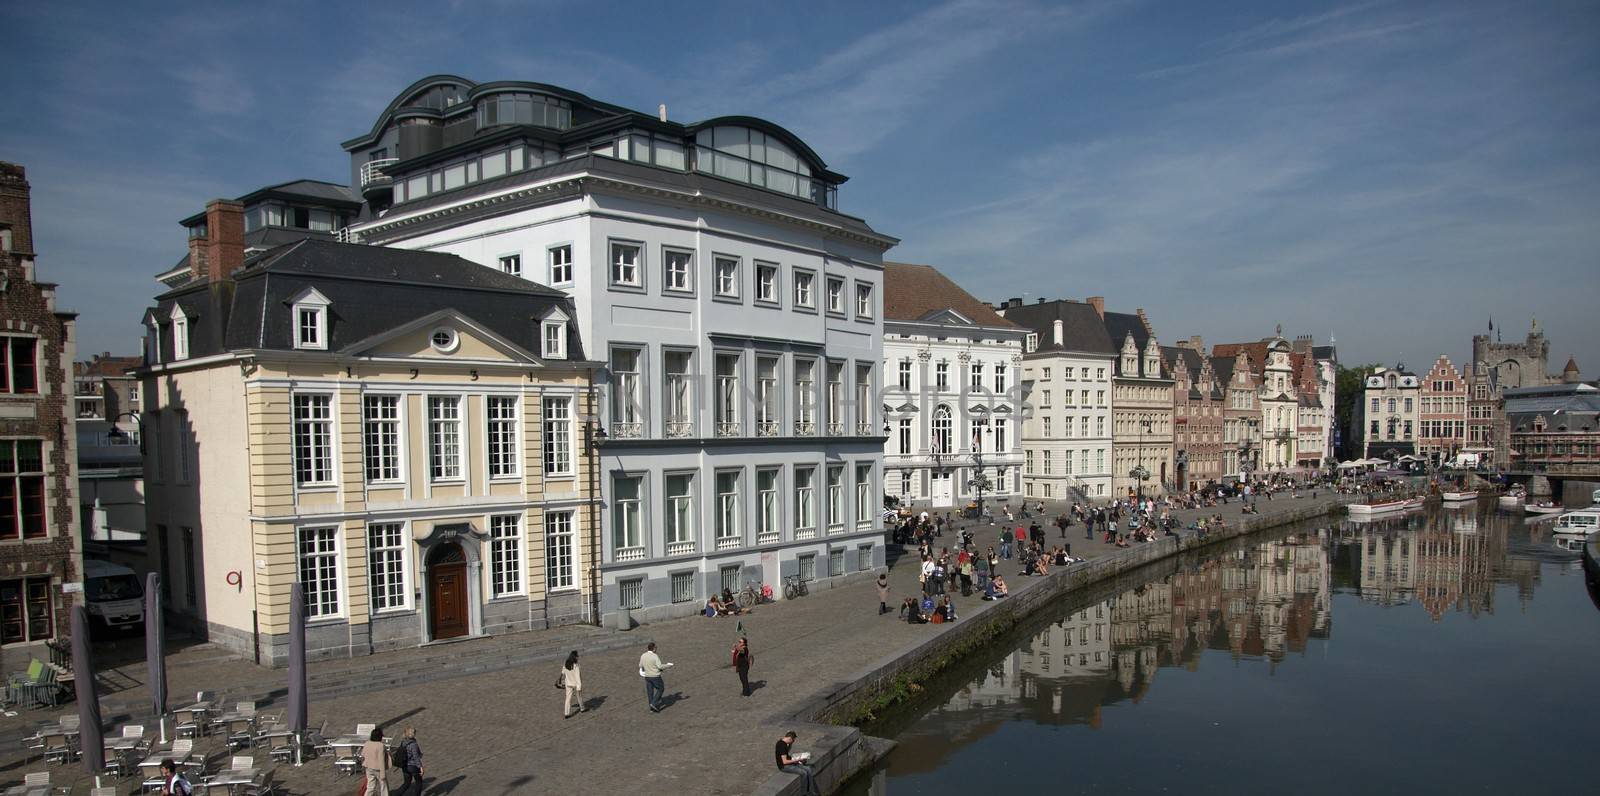 Ghent, Belgium by javax